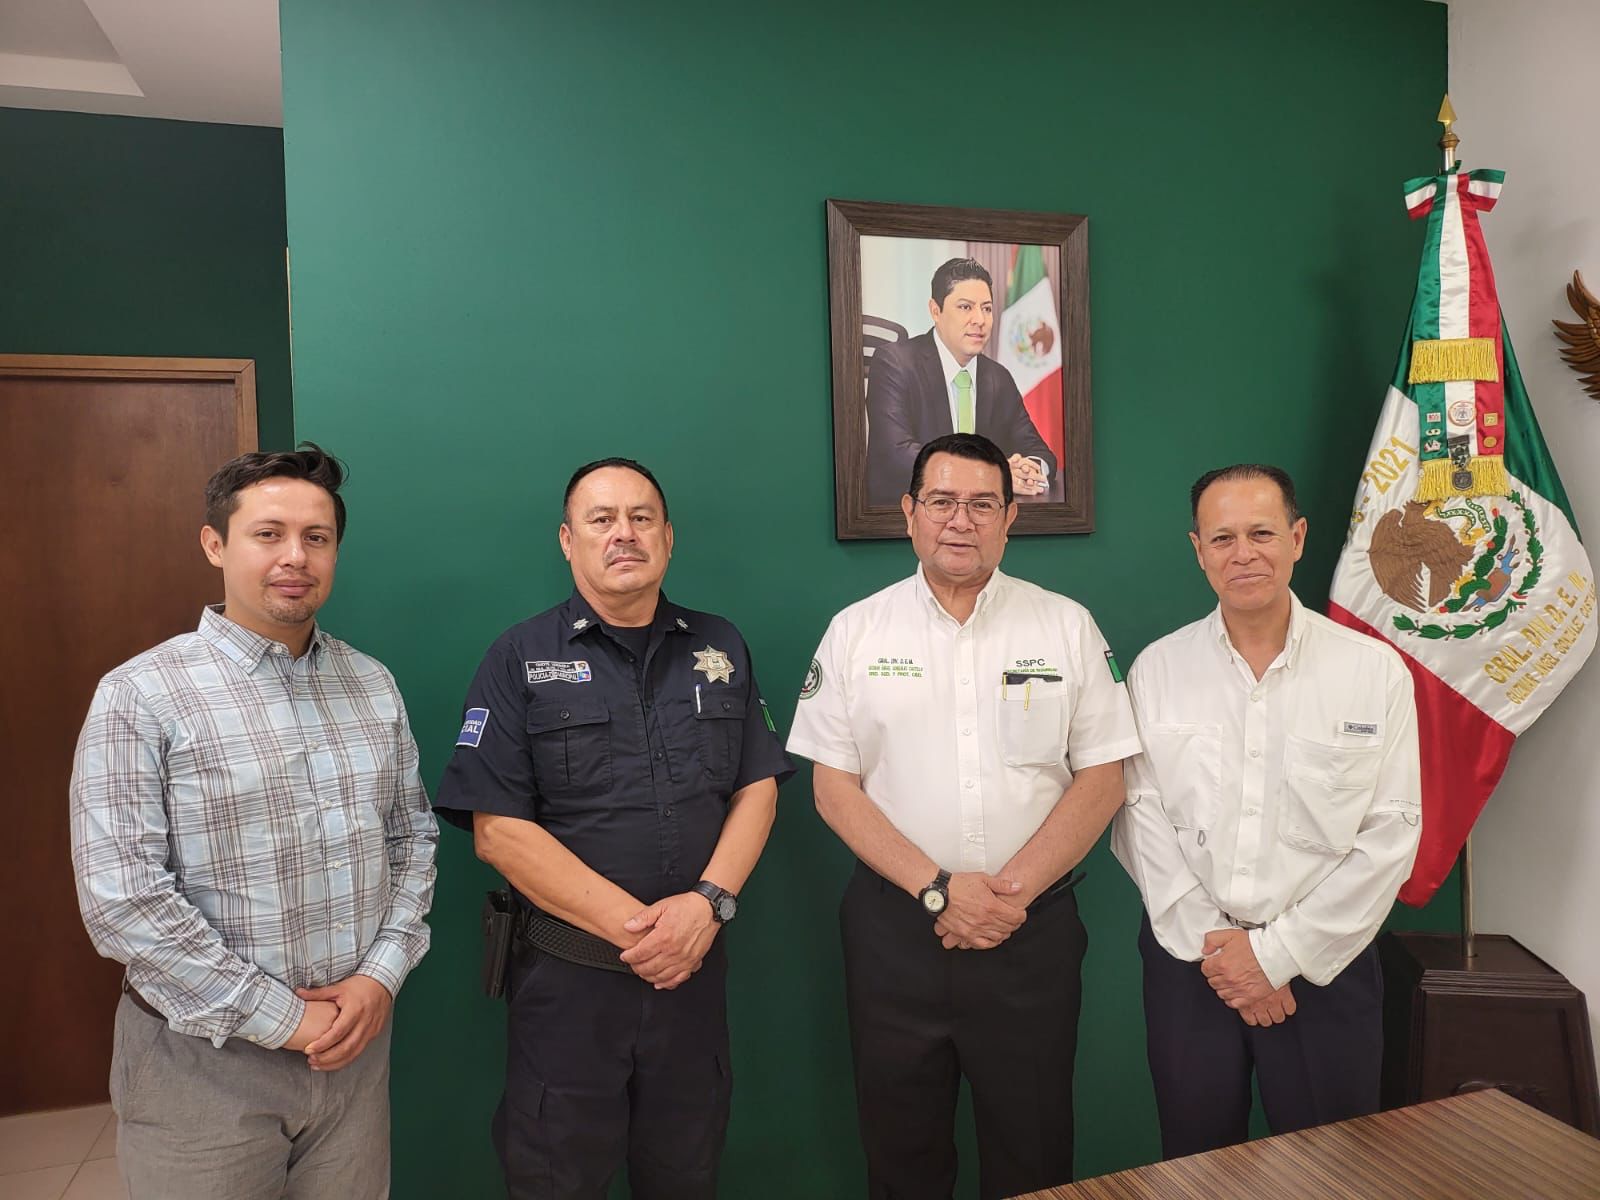 El alcalde de Ciudad Fernández reconoció el respaldo de la dependencia en labores de proximidad social y protección a la ciudadanía.